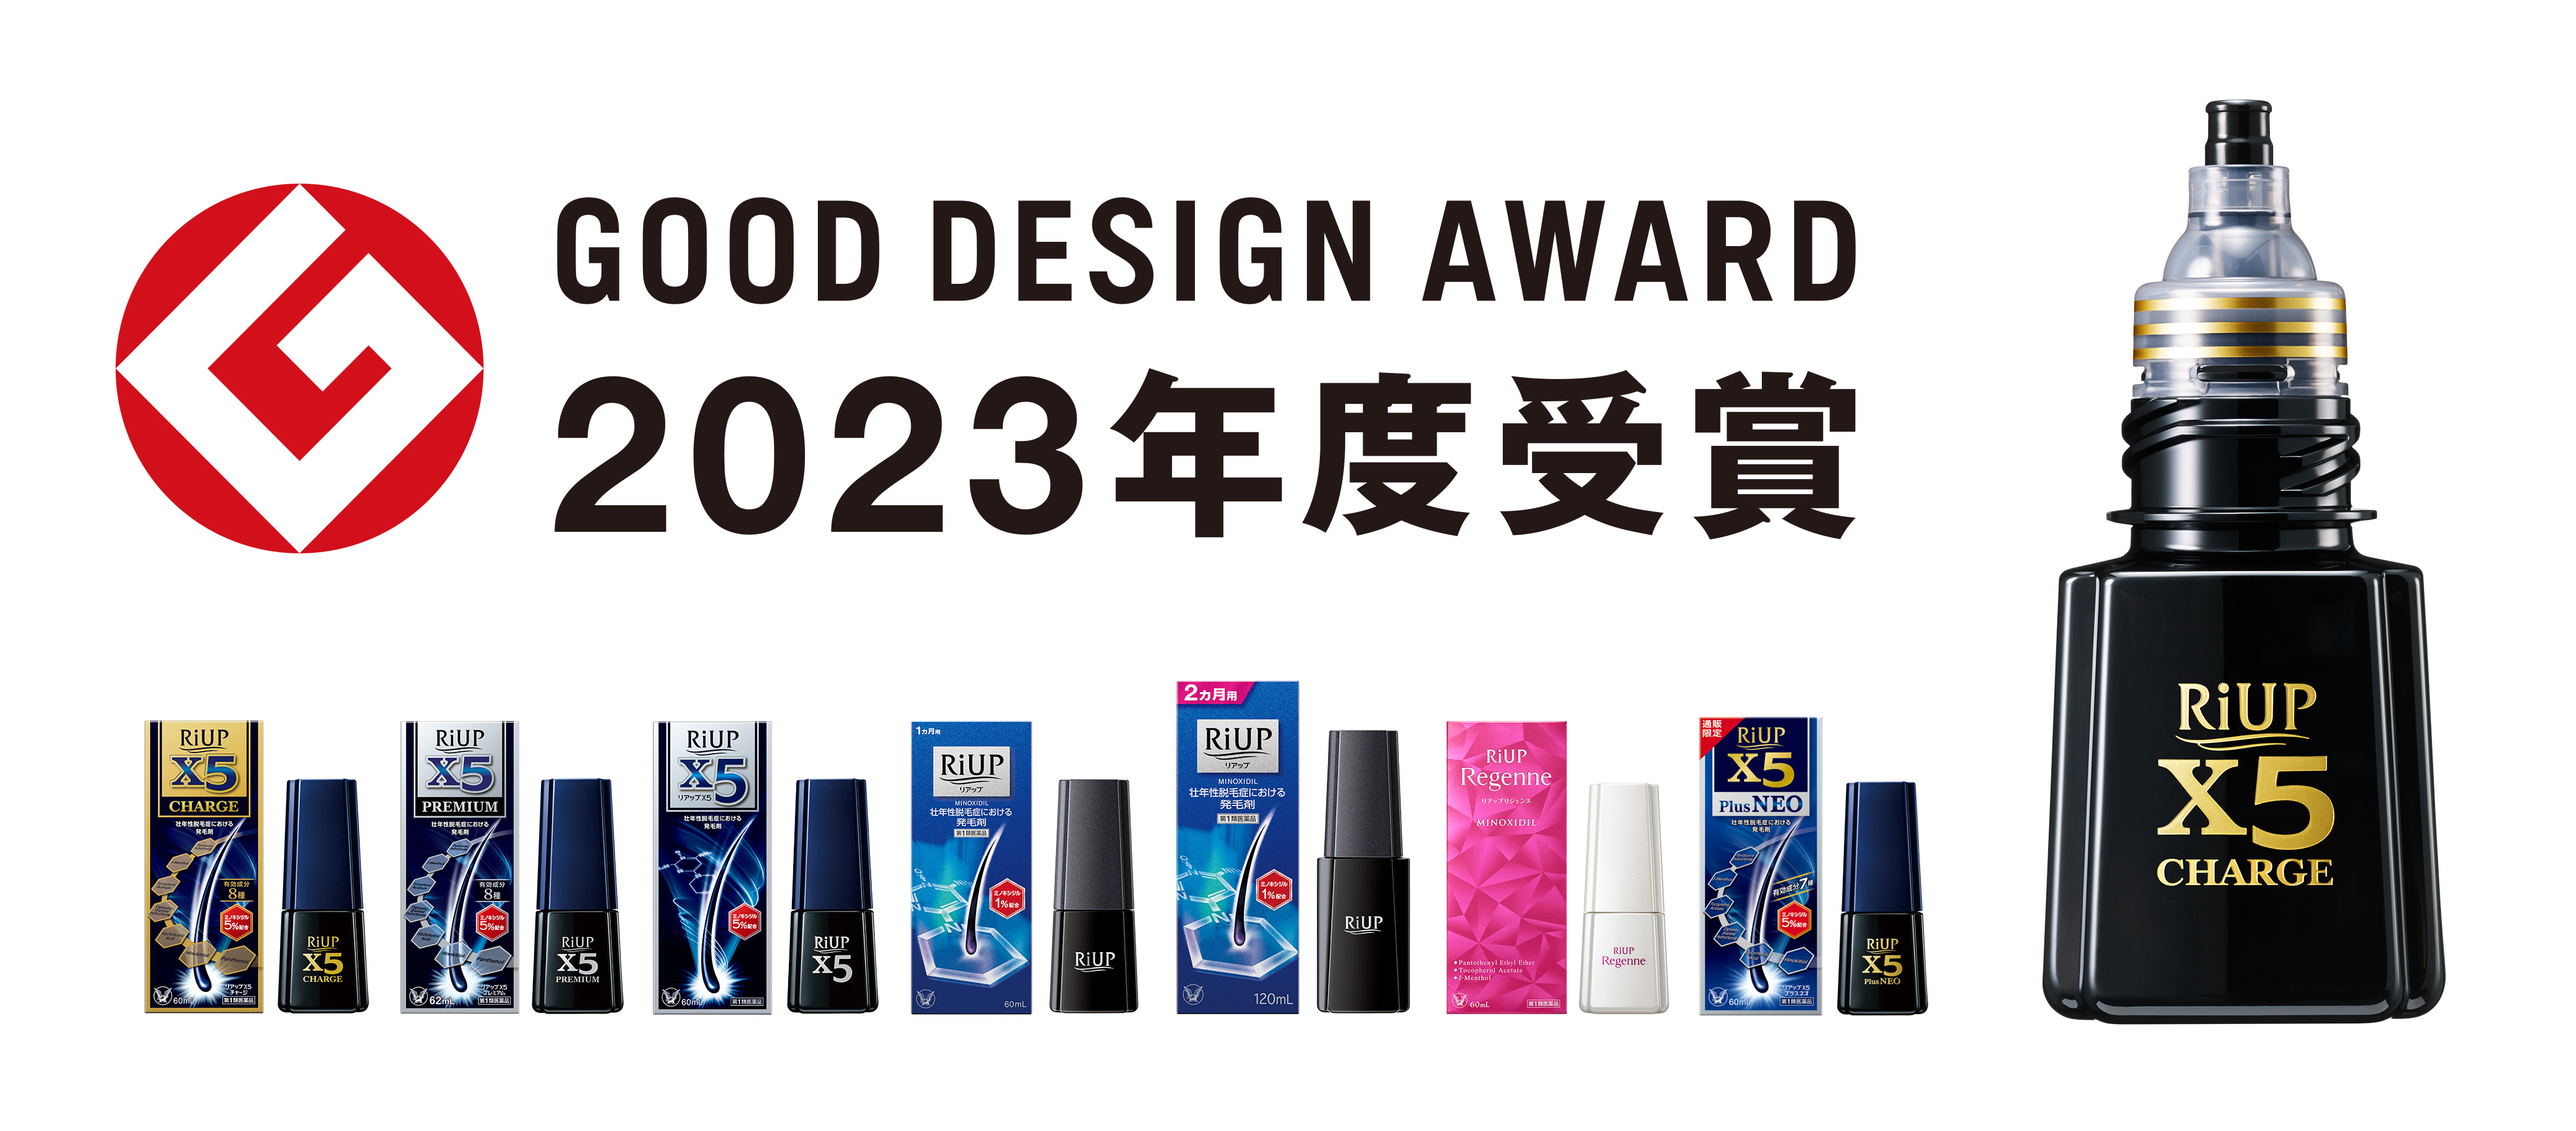 発毛剤「リアップ」 「2023年度グッドデザイン賞」受賞